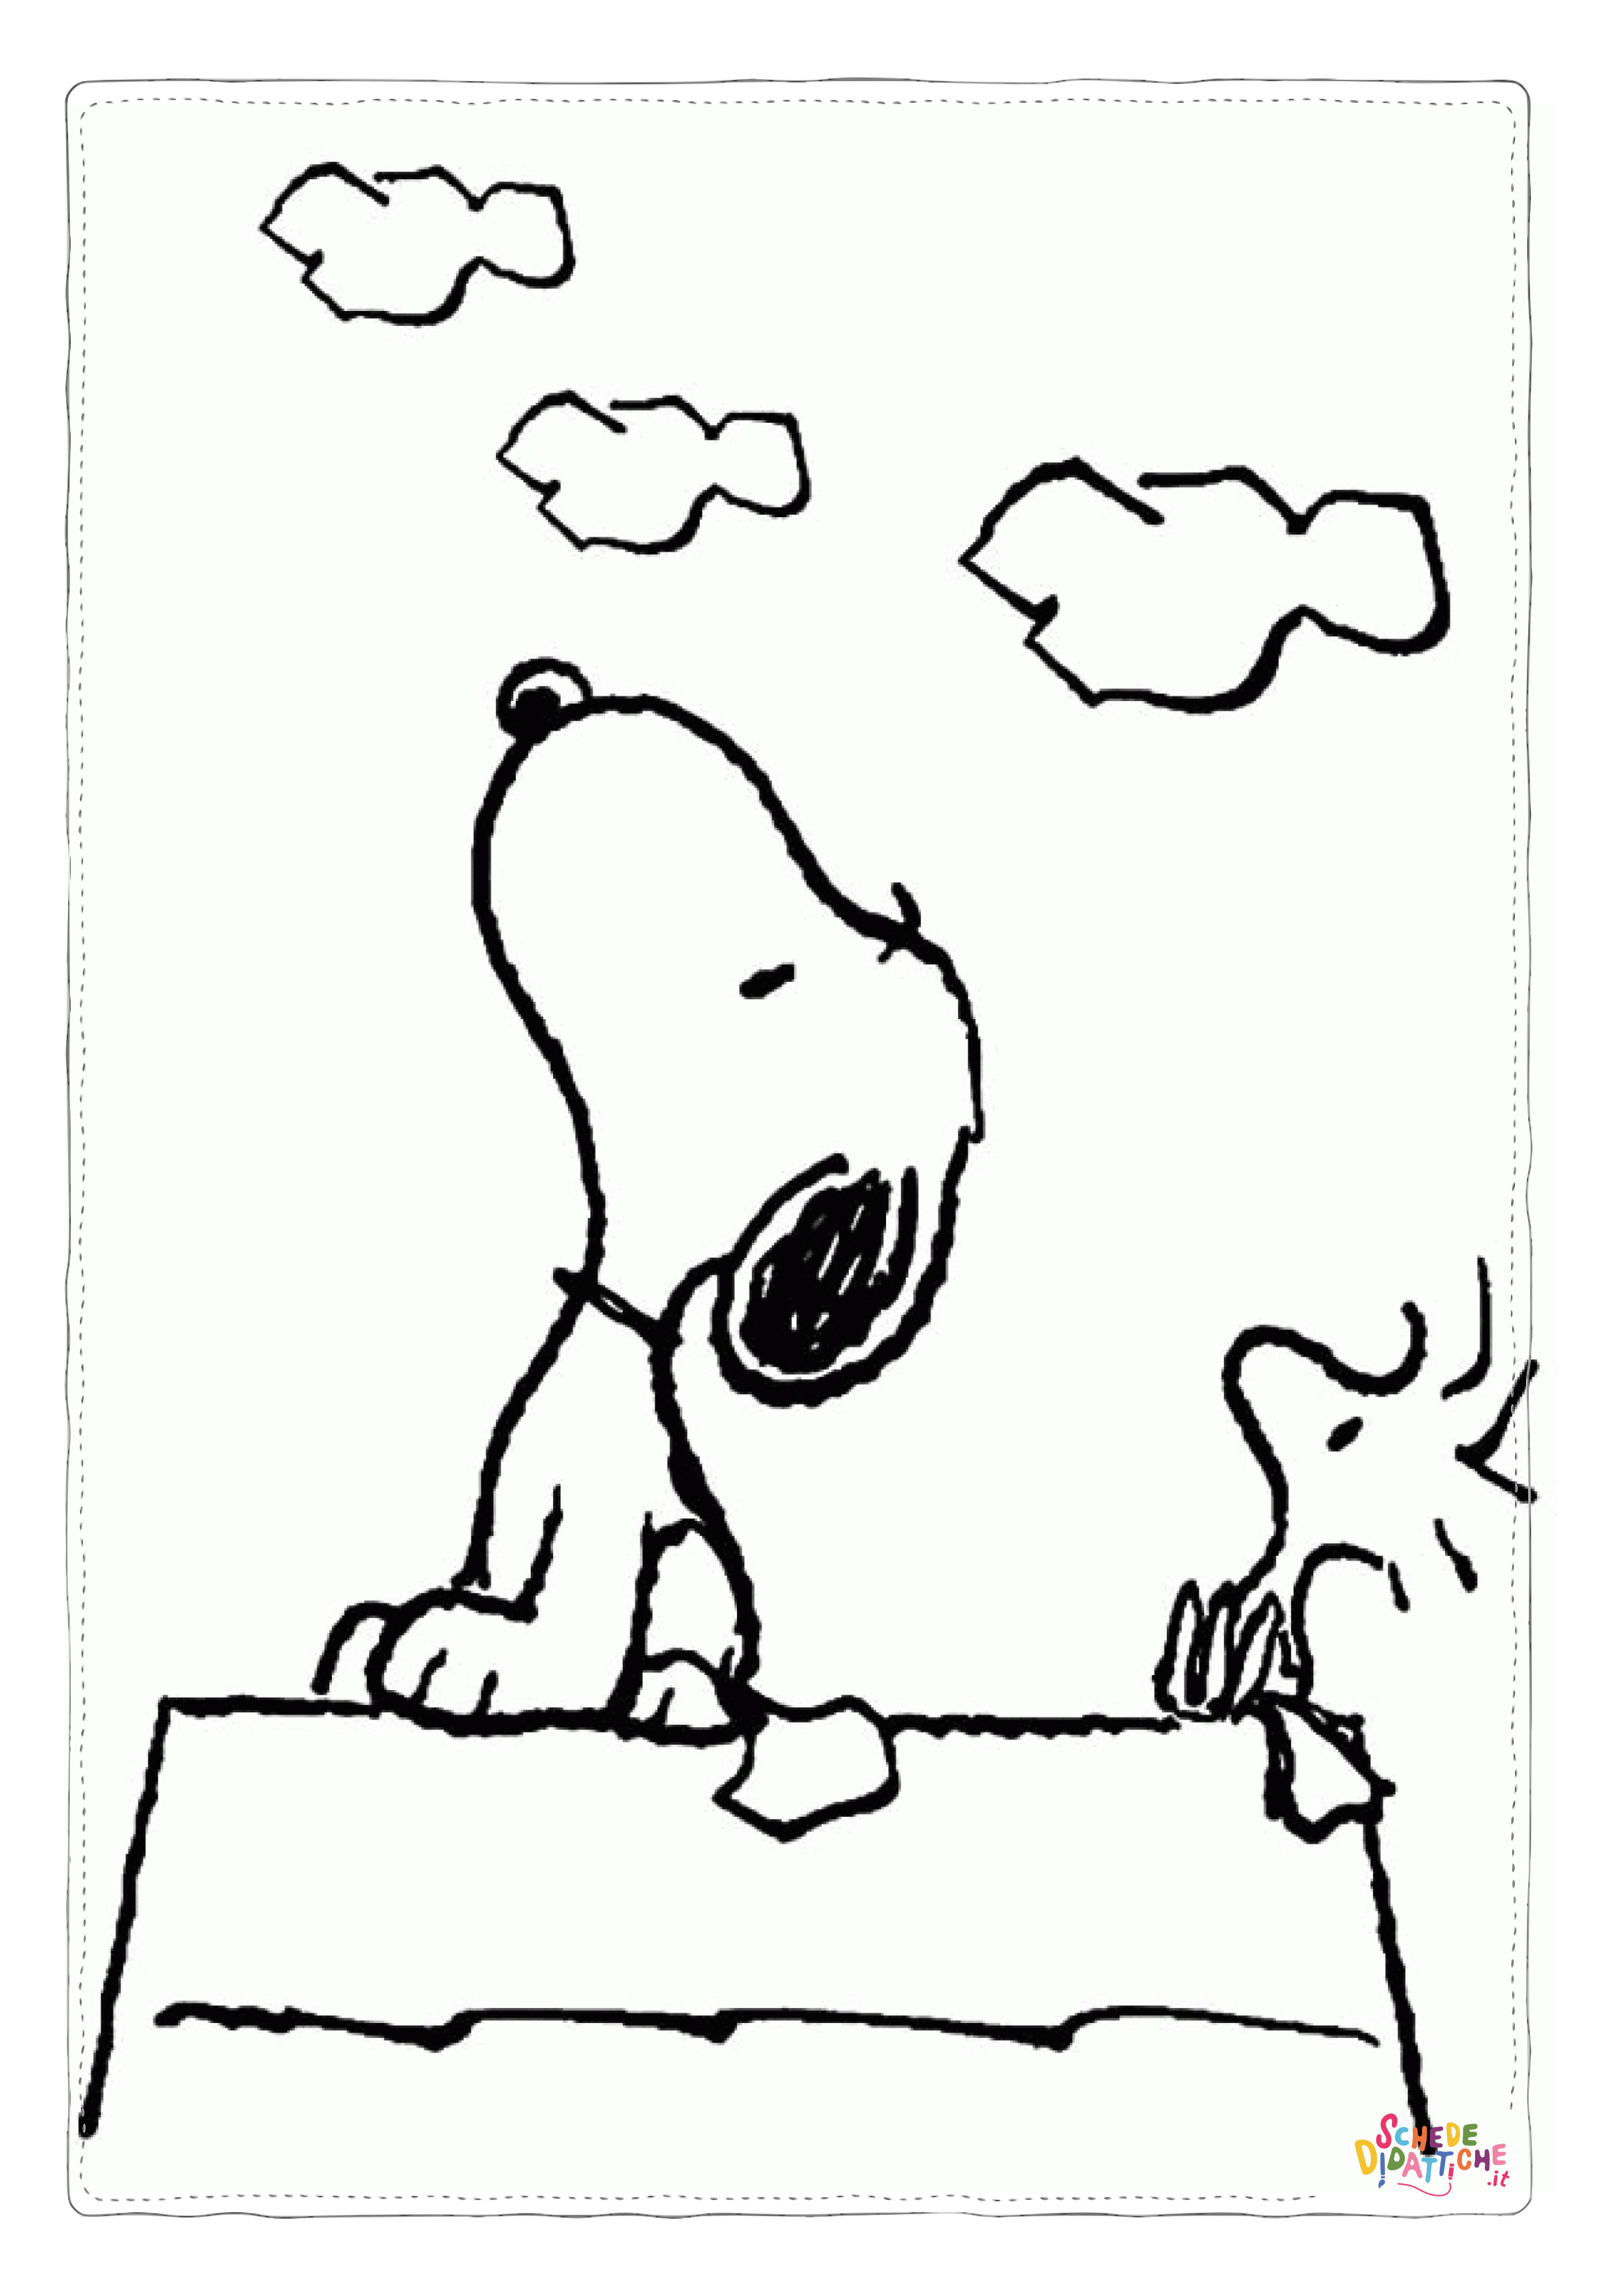 Disegno di Snoopy da stampare e colorare 1